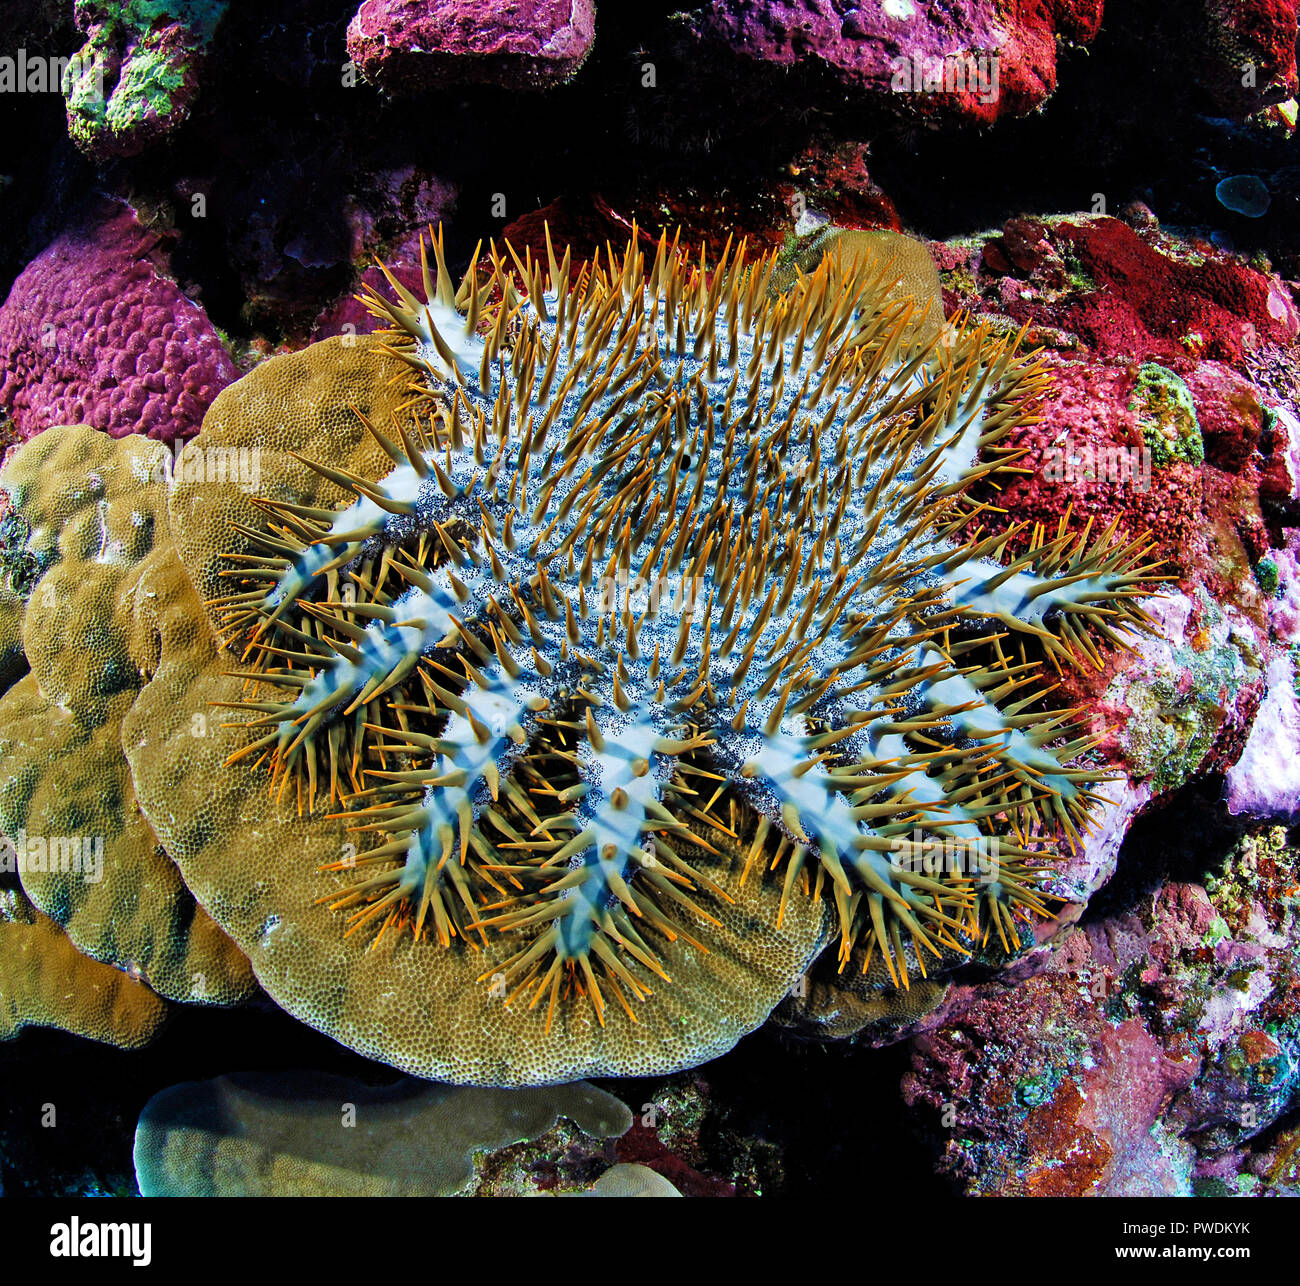 La couronne d'étoile de mer Acanthaster planci se nourrit de coraux vivants, l'île de Yap, Micronésie Banque D'Images